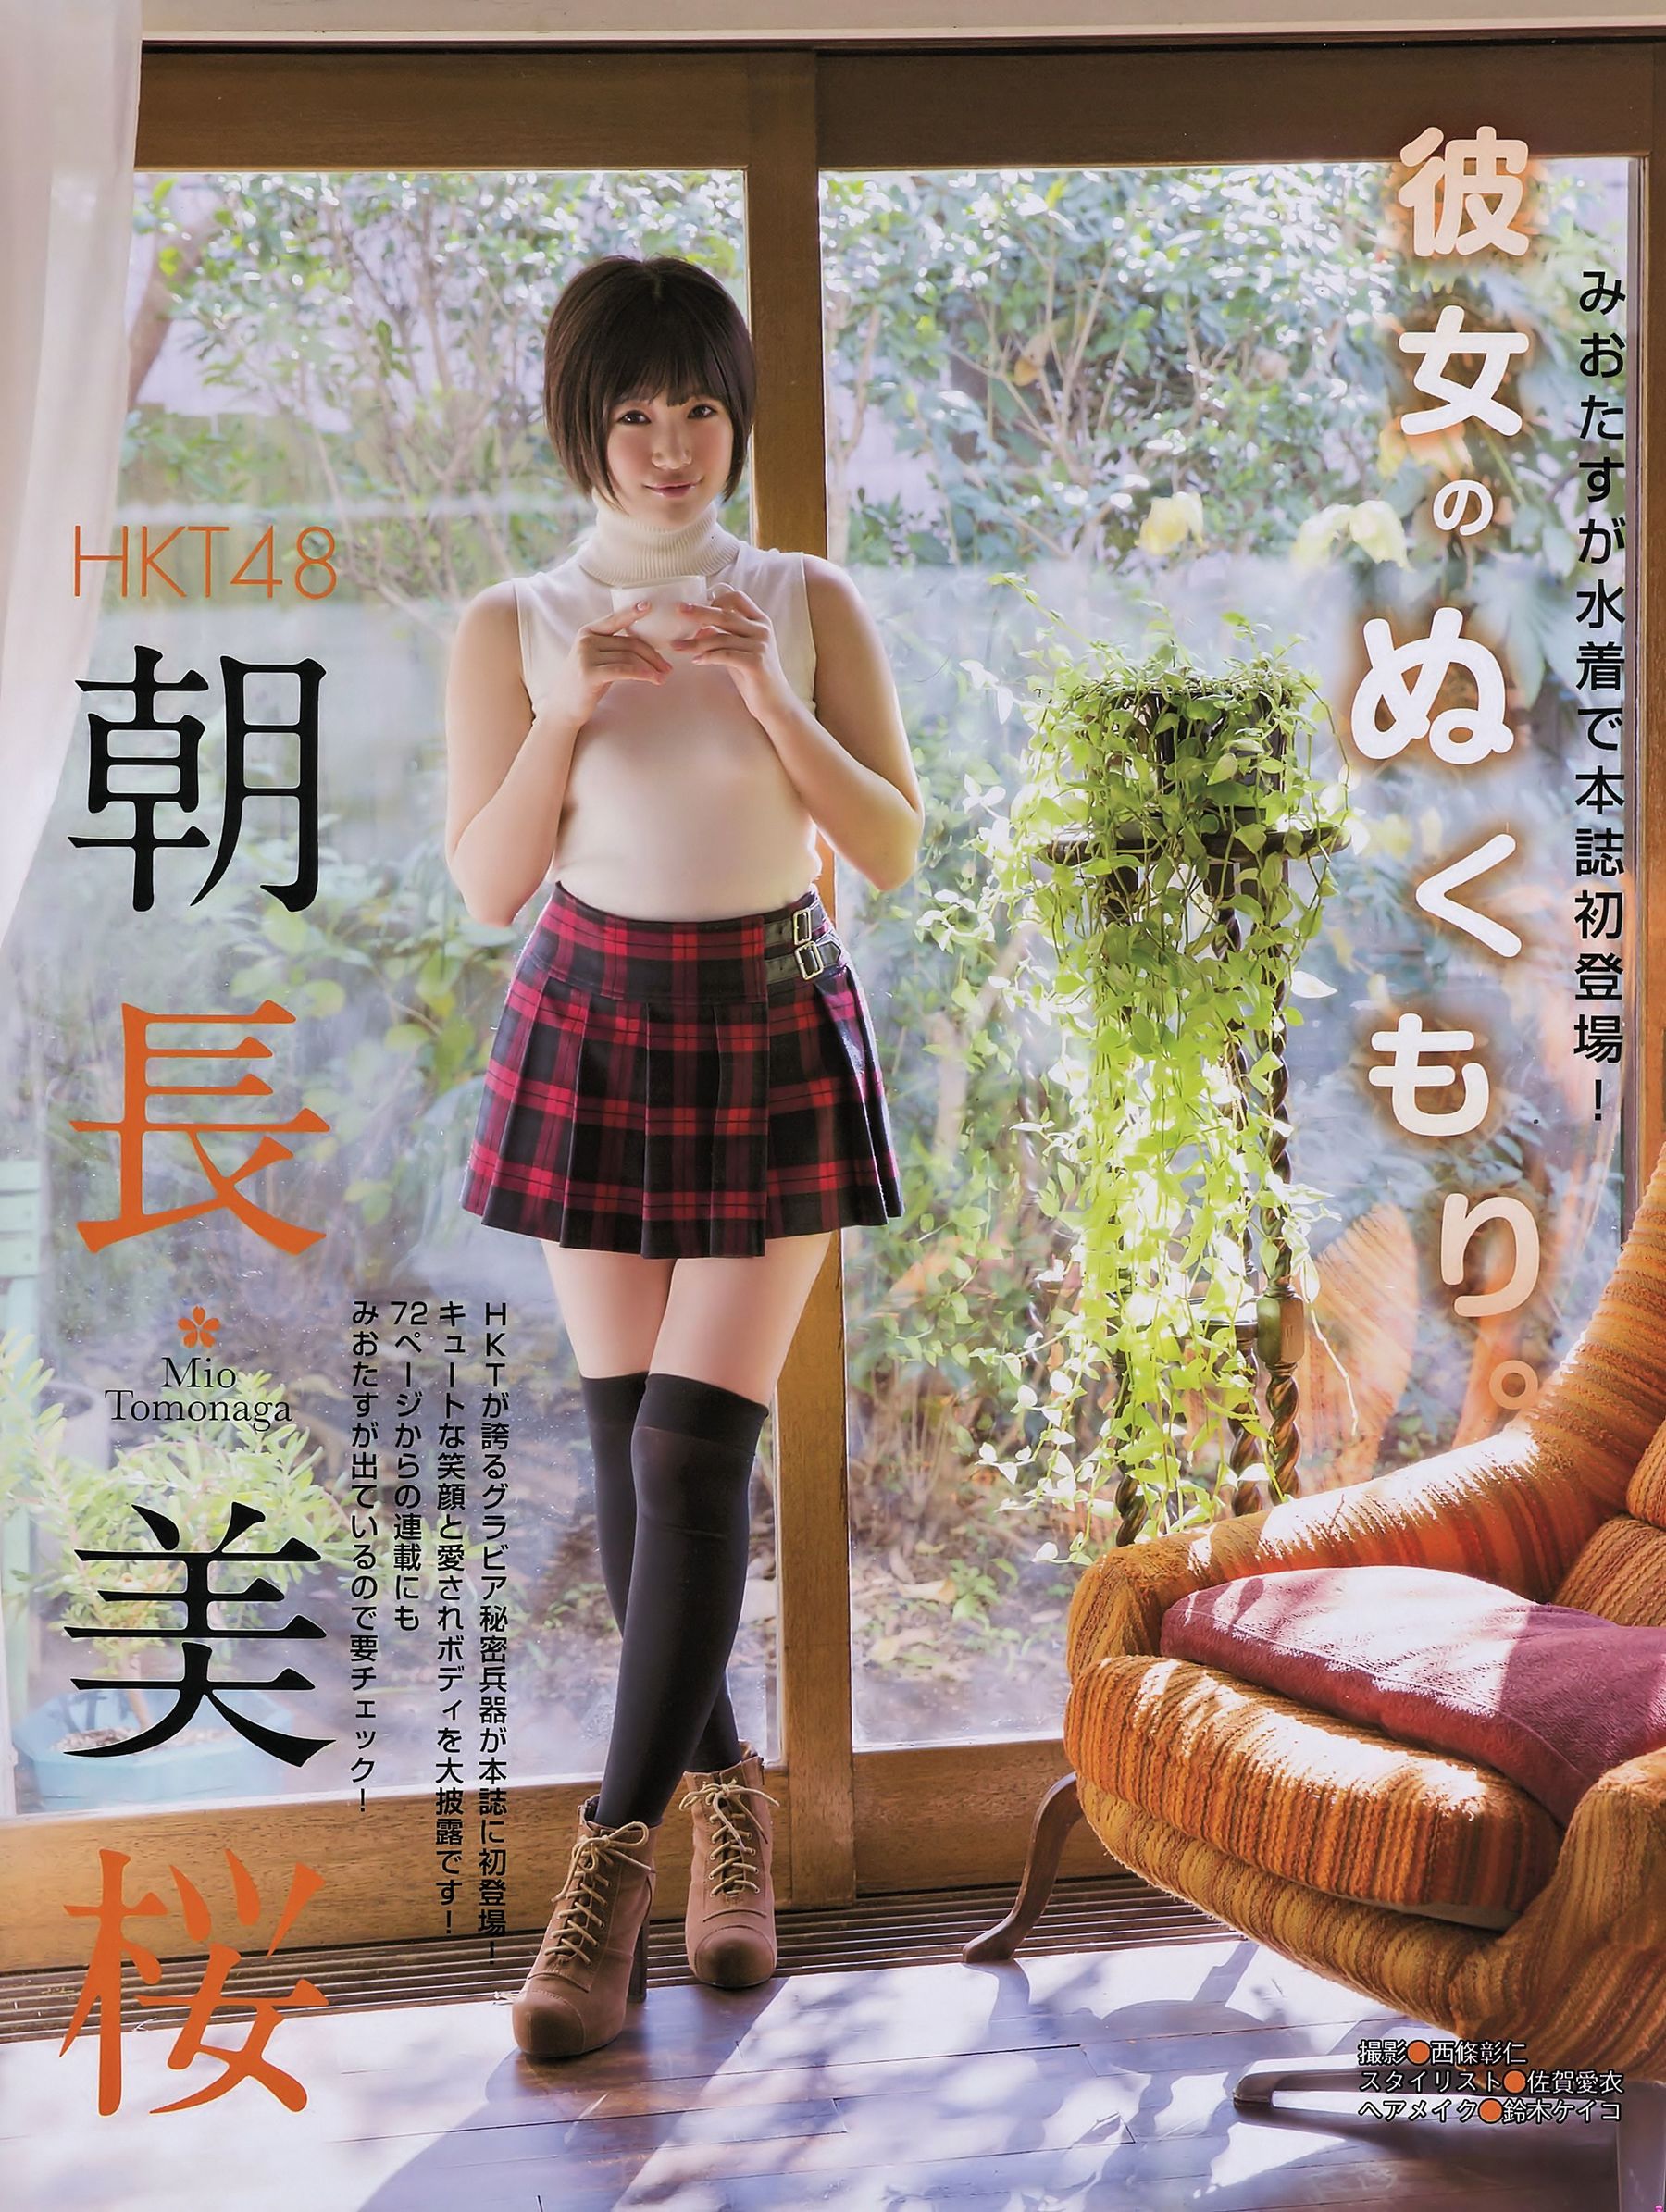 [EX Taishu] Miyuki Watanabe Yuki Kashiwagi Mio Tomonaga 2015 NO.01 & 02 Photograph Page 2 No.27be24